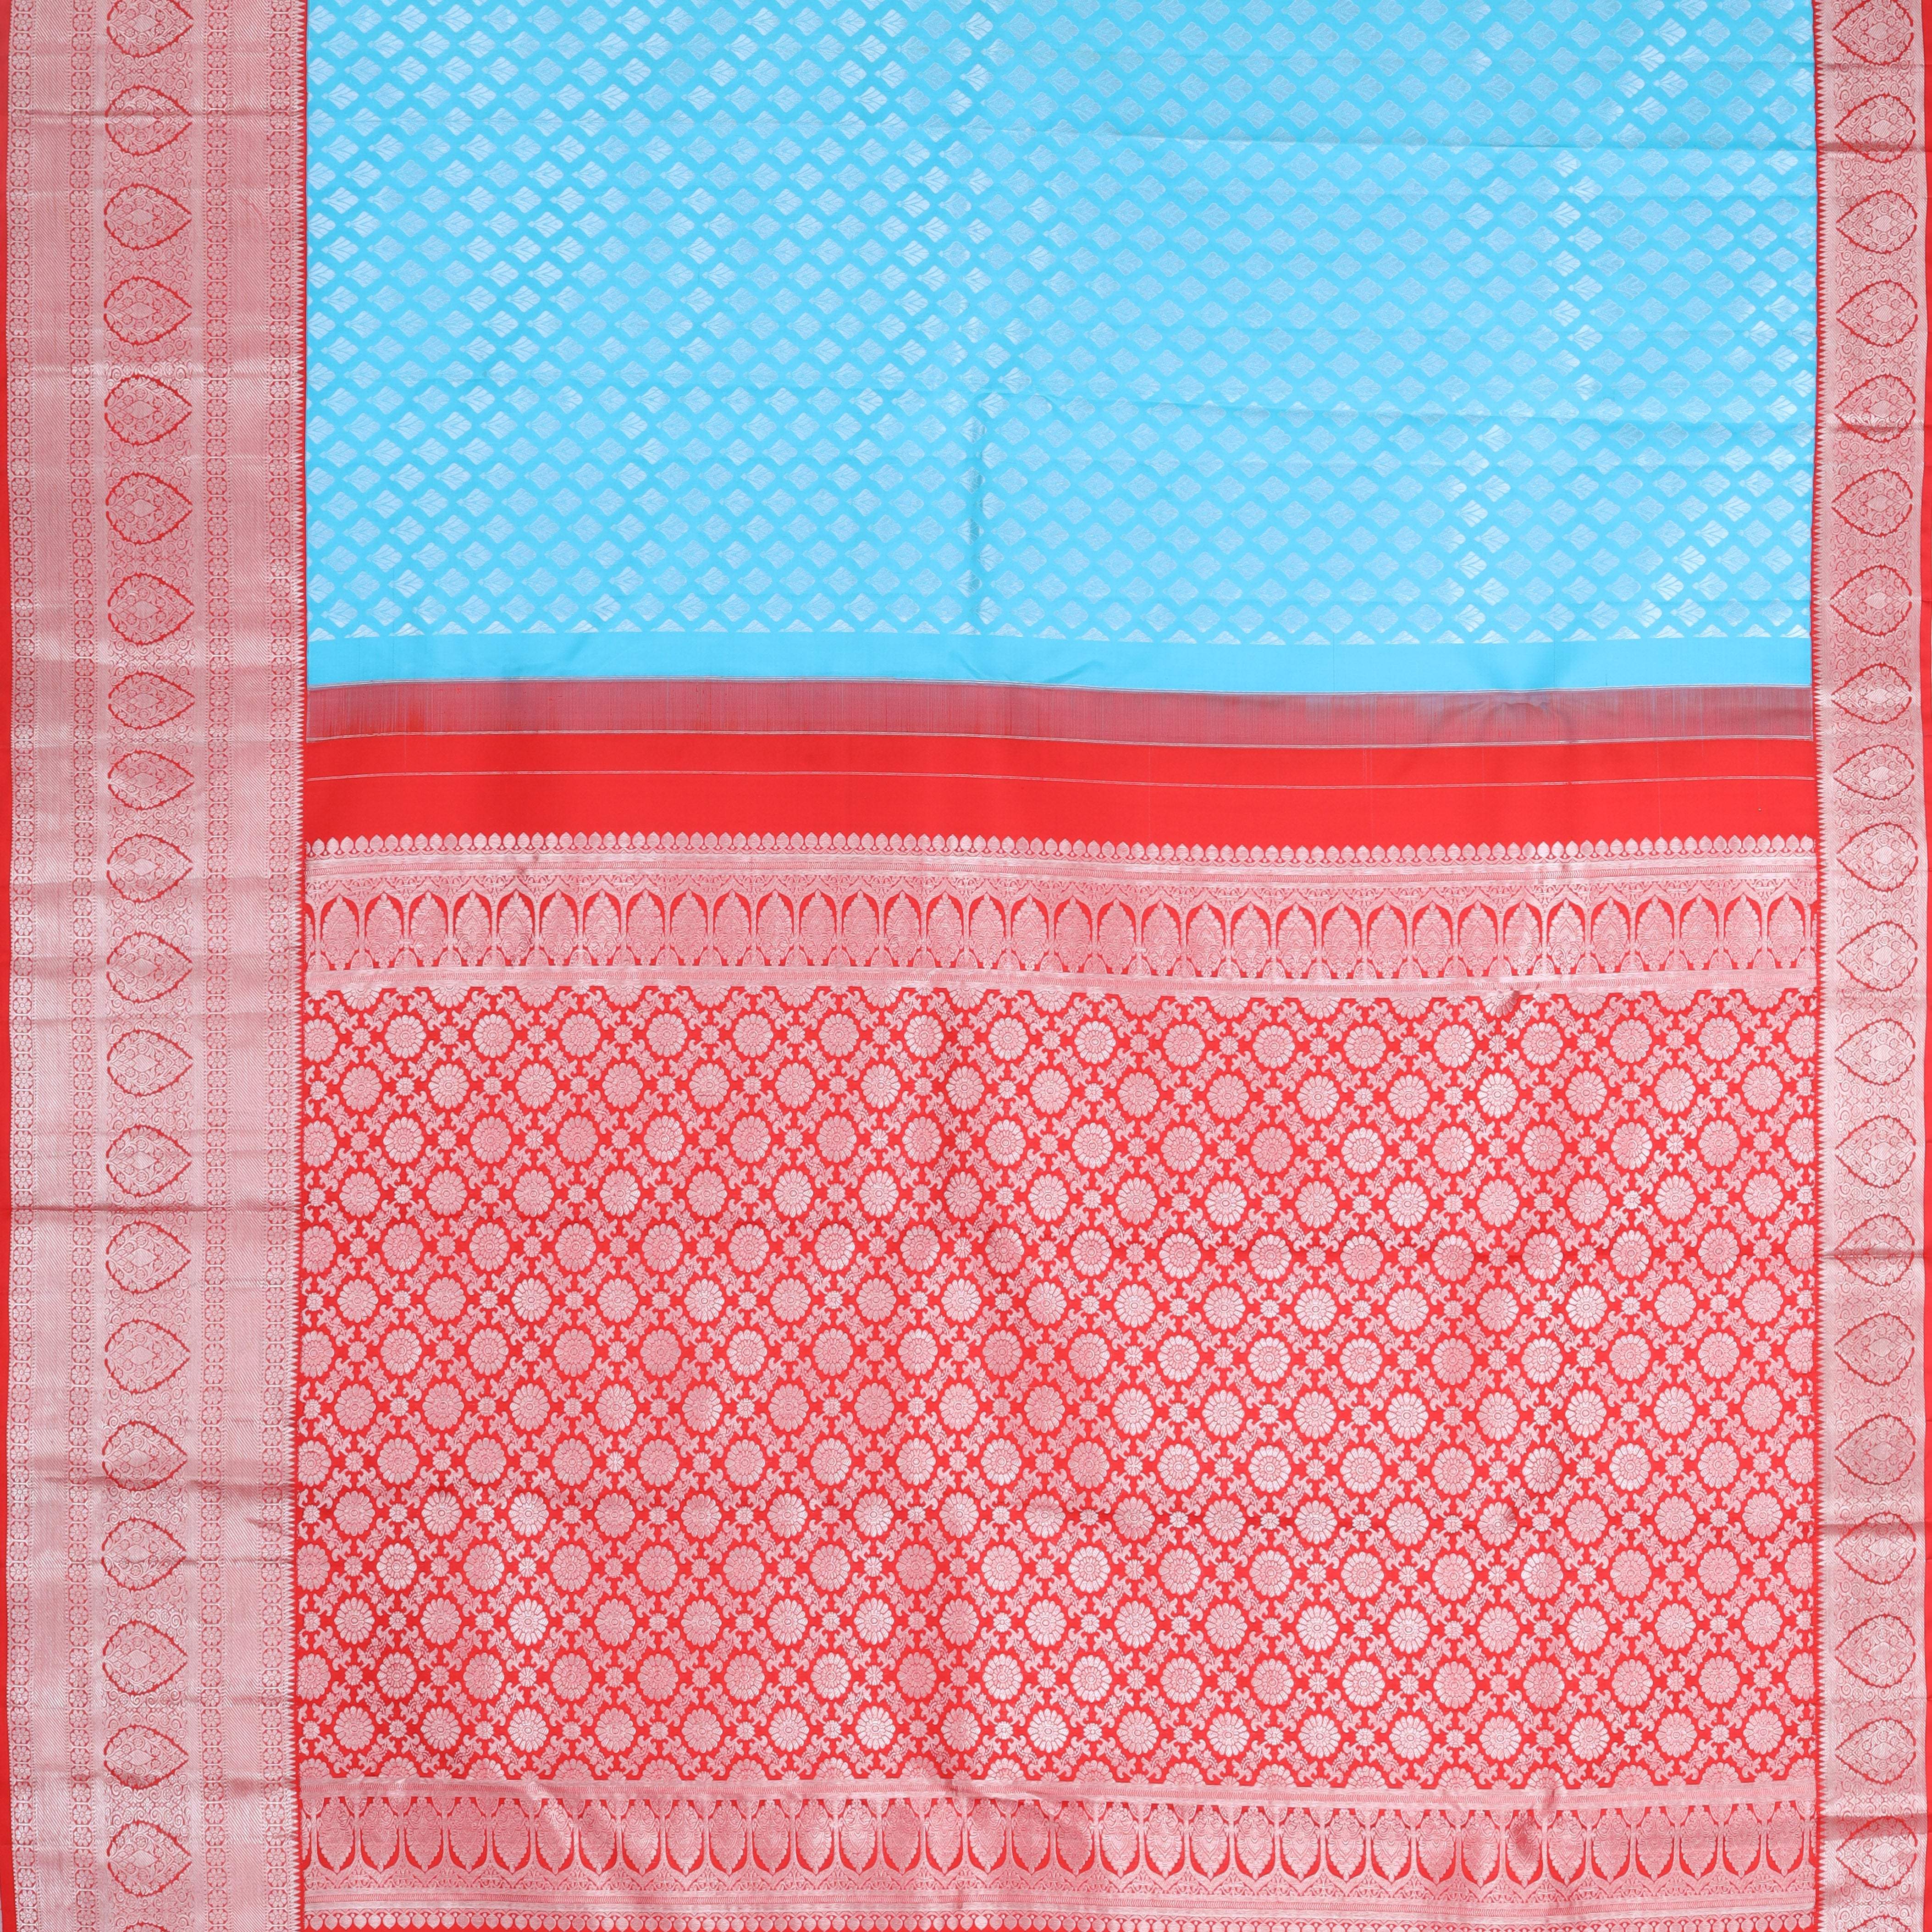 Sky Blue Kanjivaram Silk Saree With Floral Motifs - Singhania's